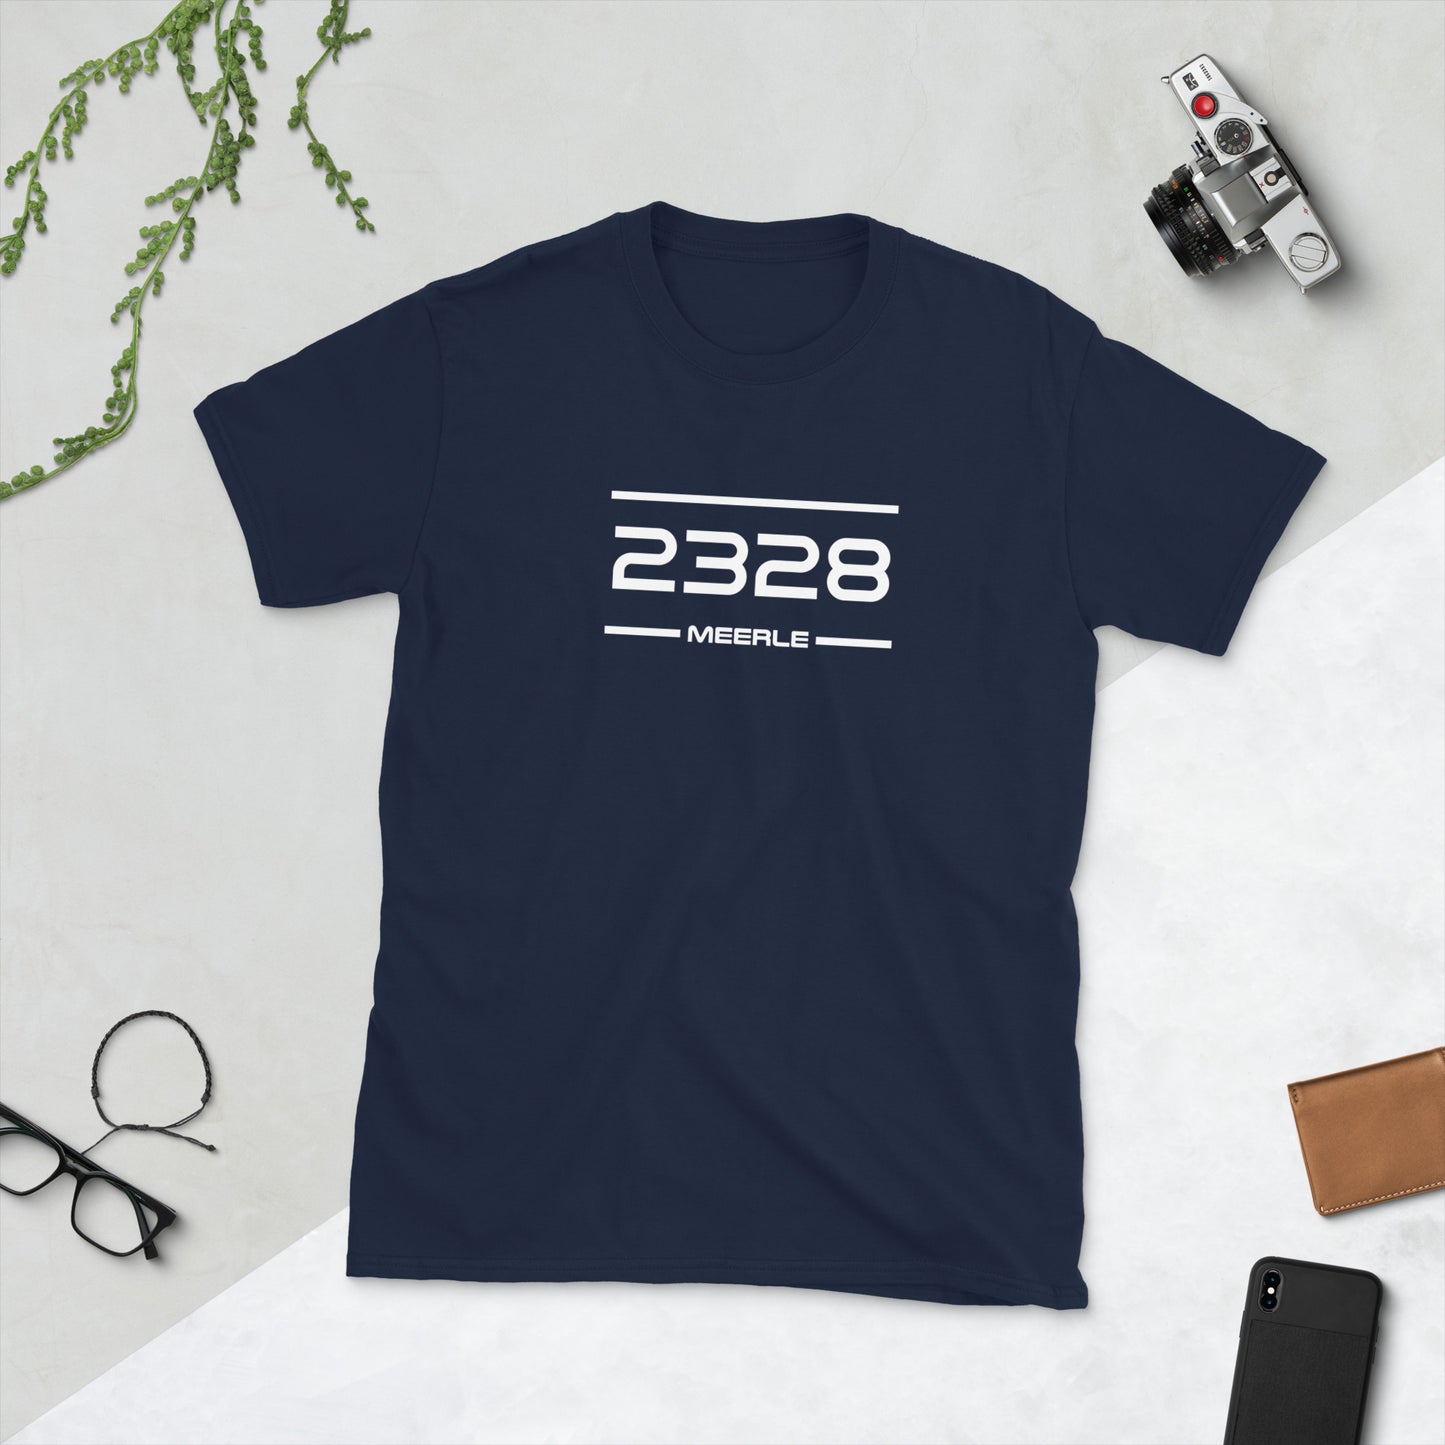 Tshirt - 2328 - Meerle